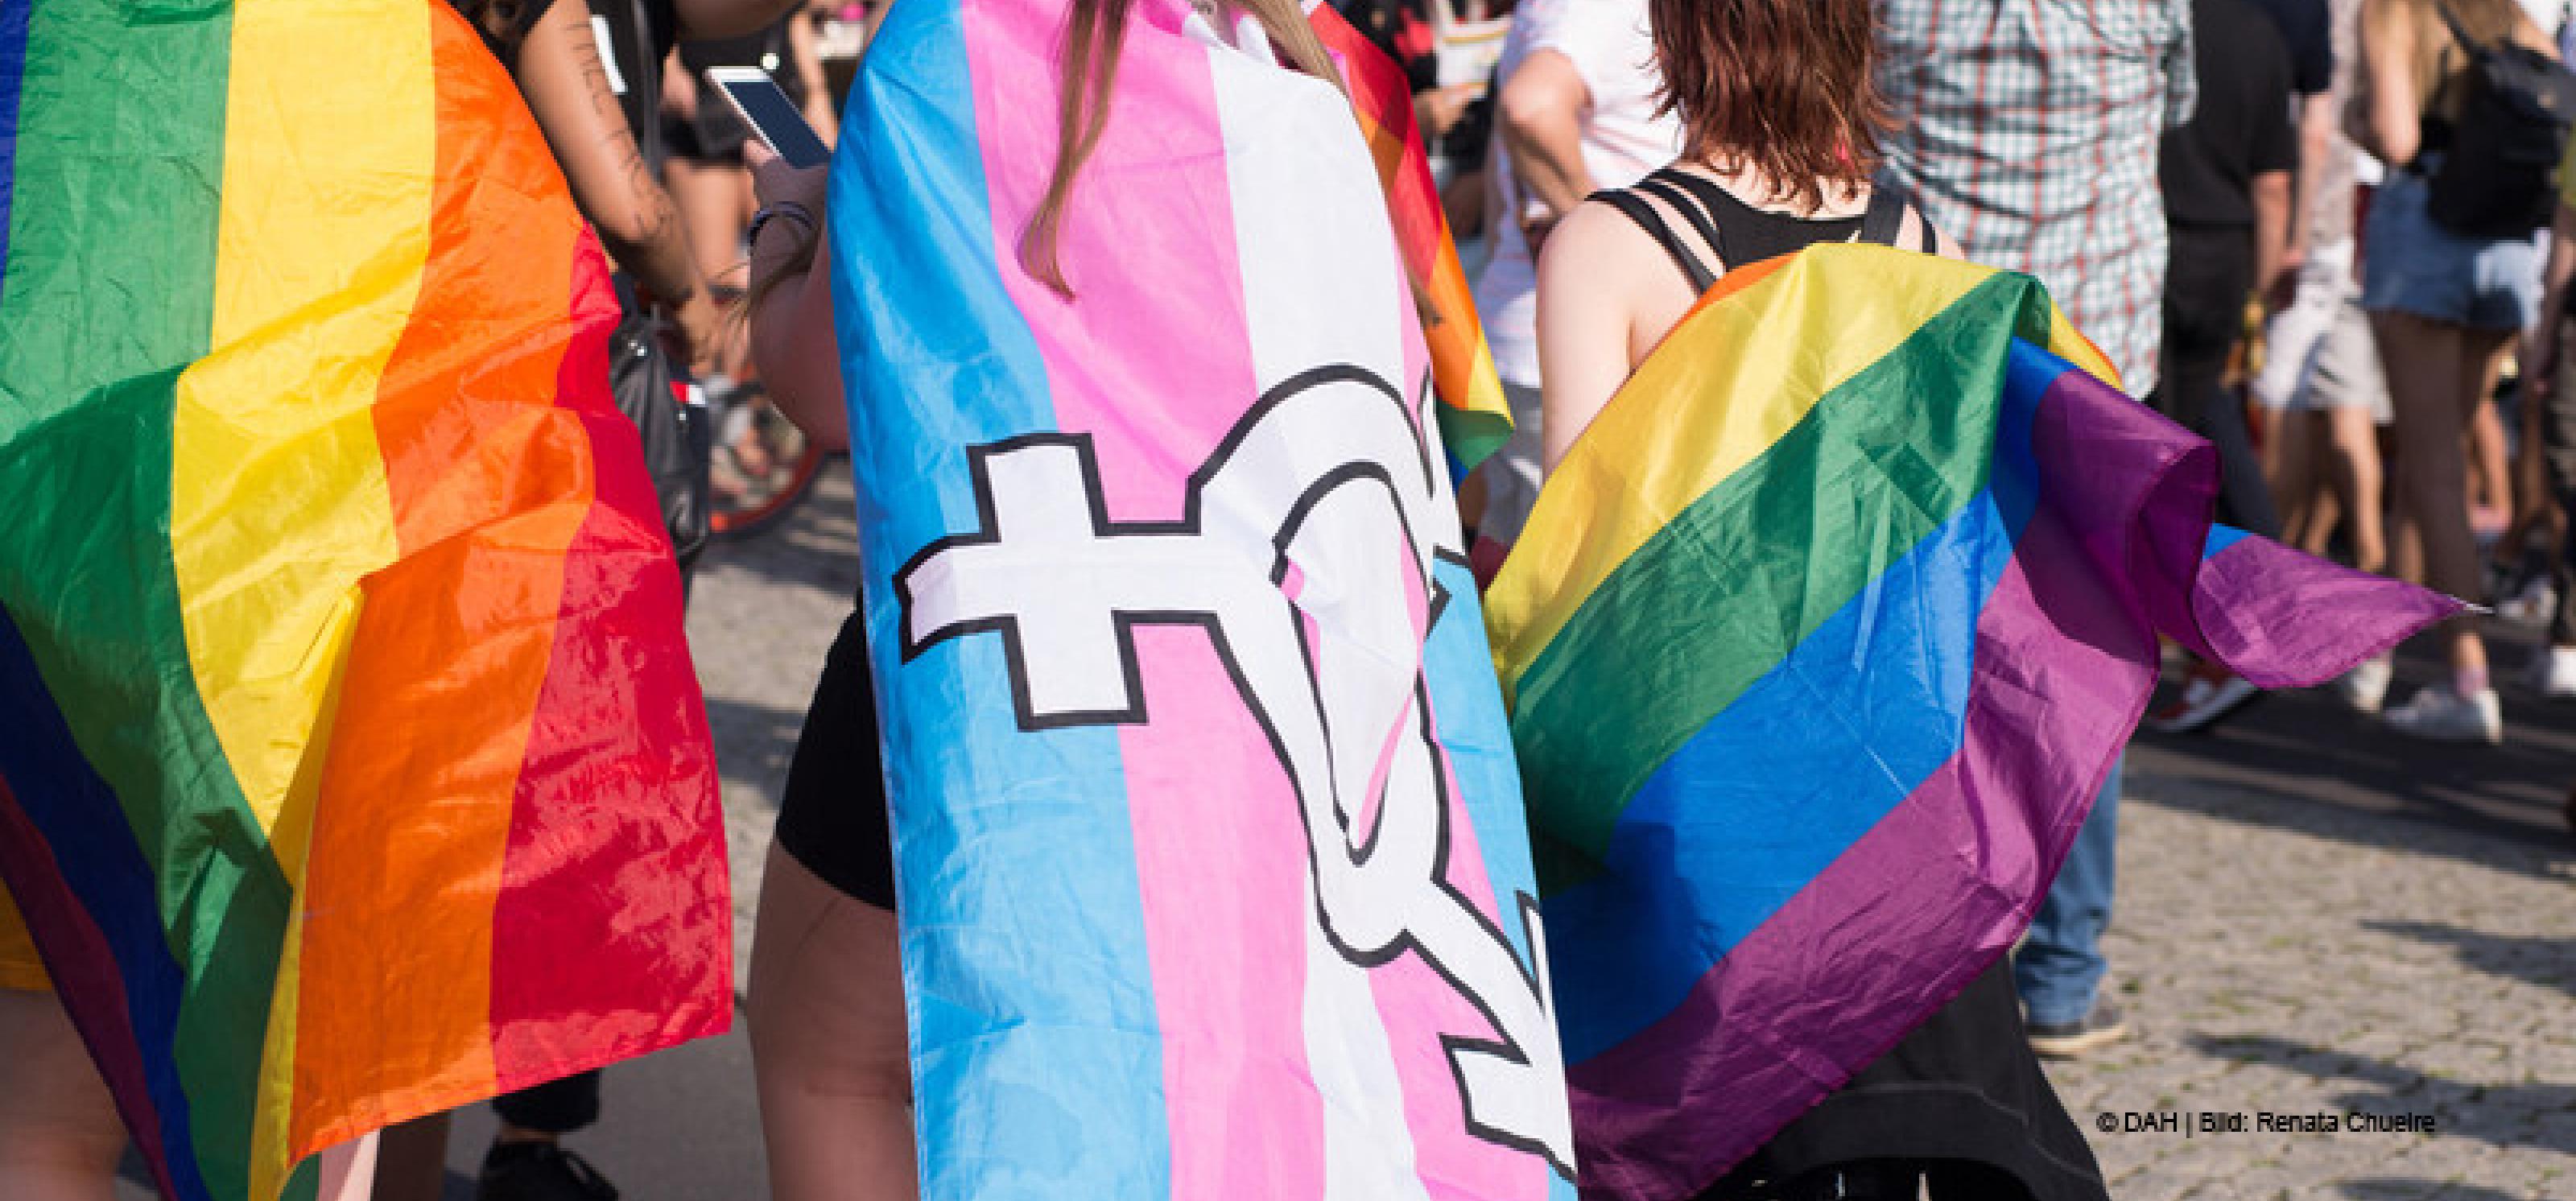 Grundgesetz Für Alle Will Queere Menschen Schützen